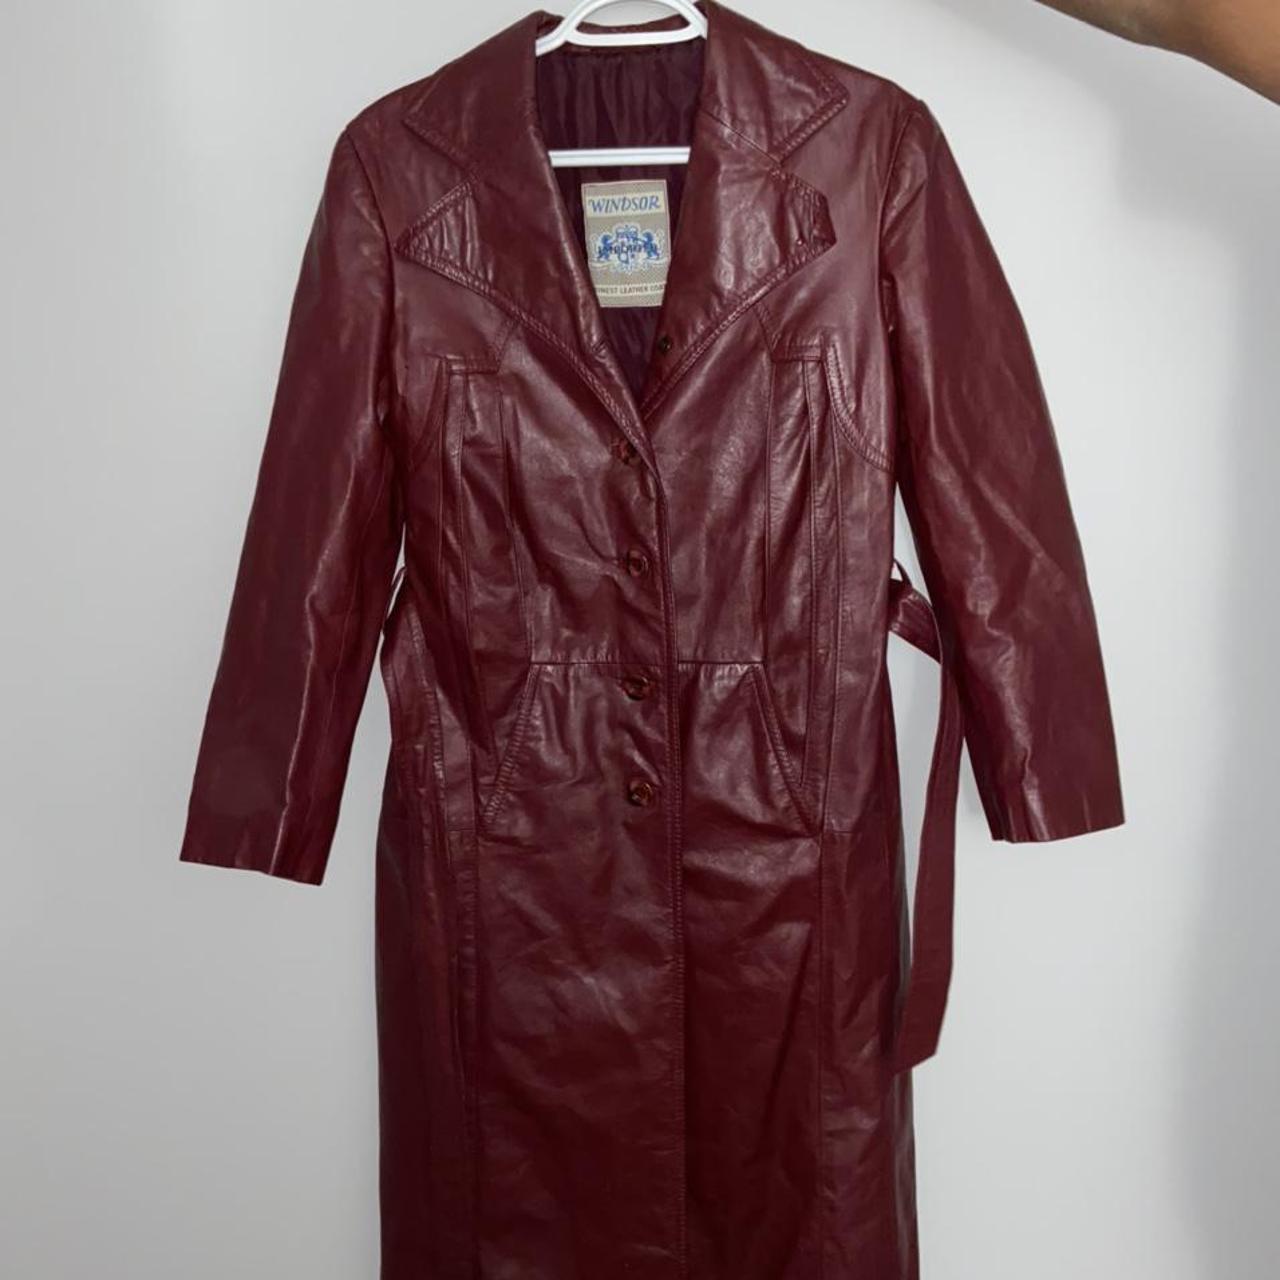 Vintage leather trench coat - Depop